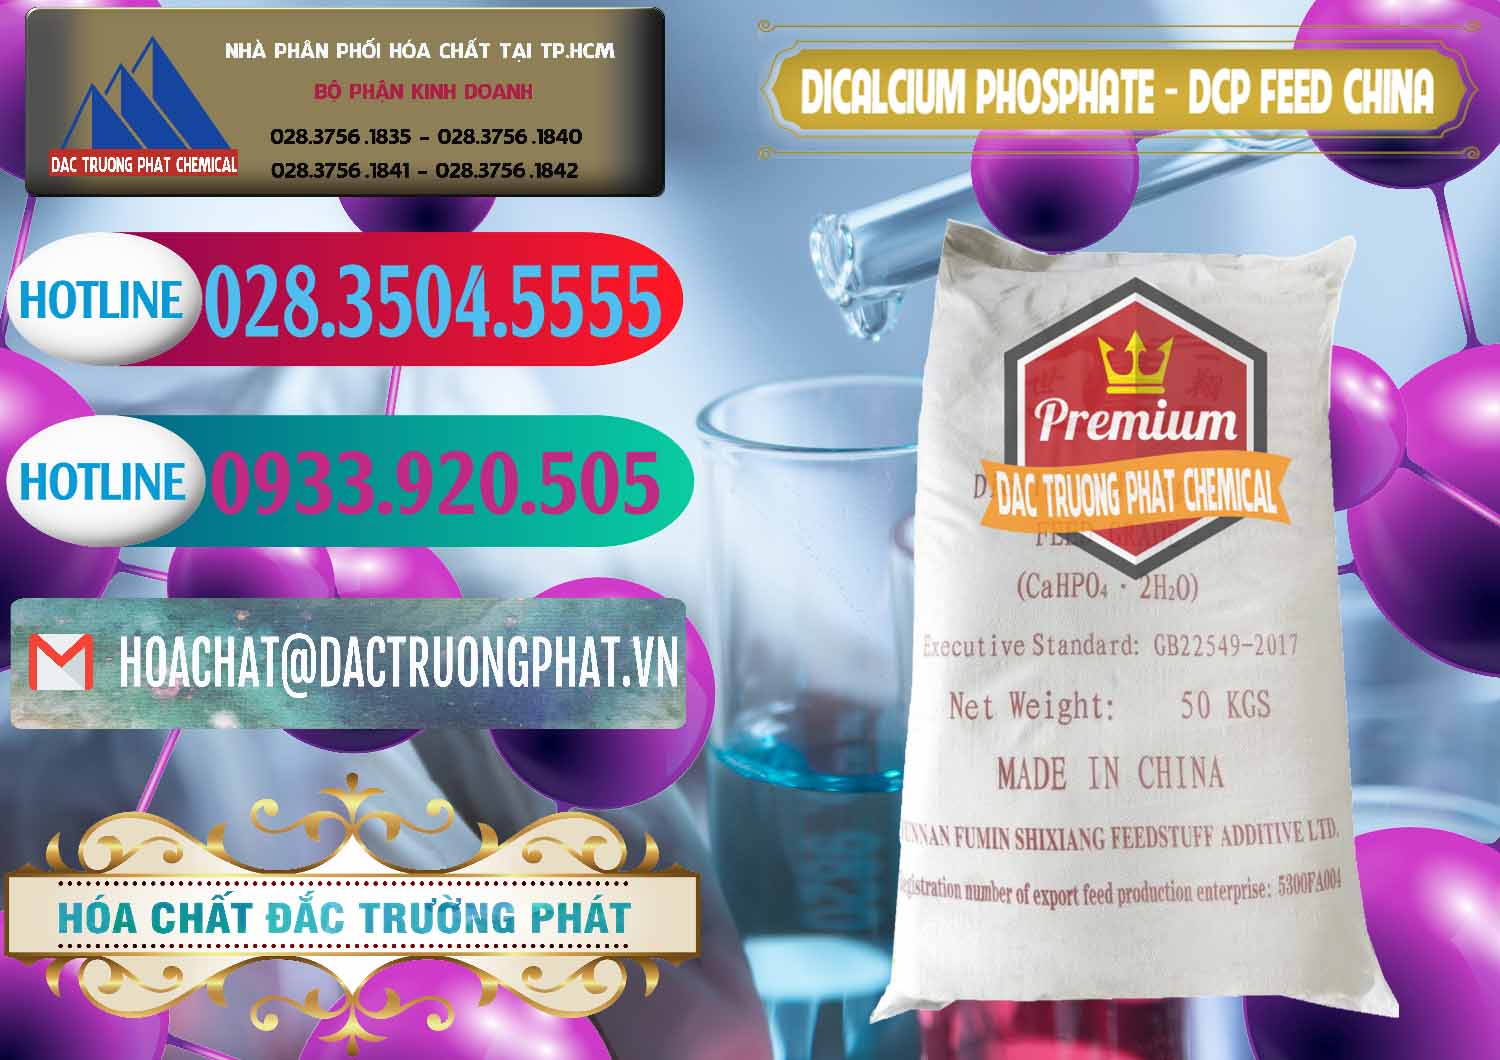 Phân phối & bán Dicalcium Phosphate - DCP Feed Grade Trung Quốc China - 0296 - Cty bán & cung cấp hóa chất tại TP.HCM - truongphat.vn